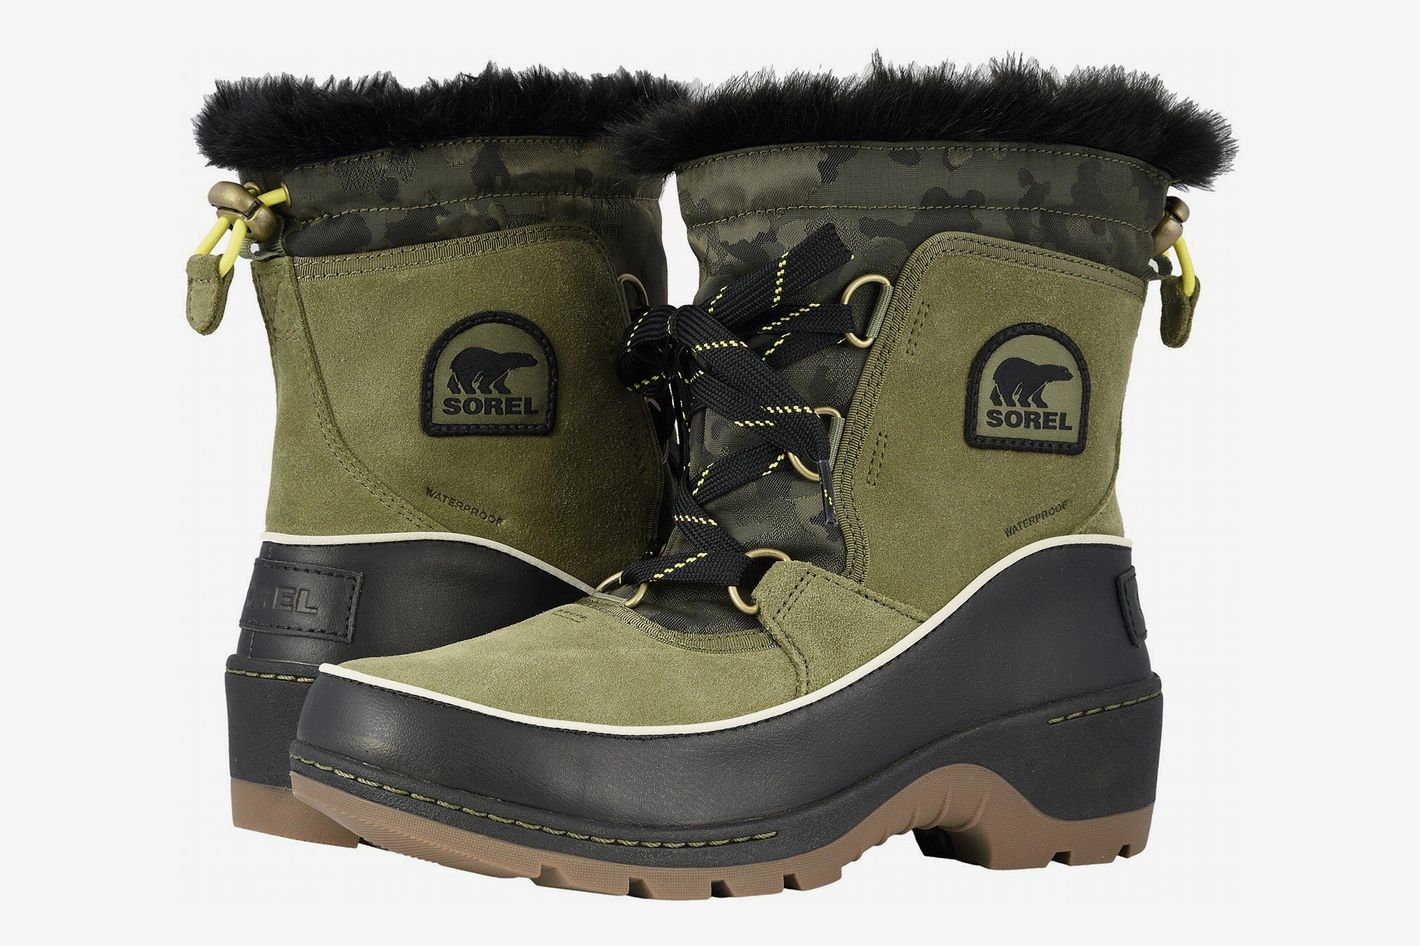 Sorel Winter Boots Sale Zappos 2019